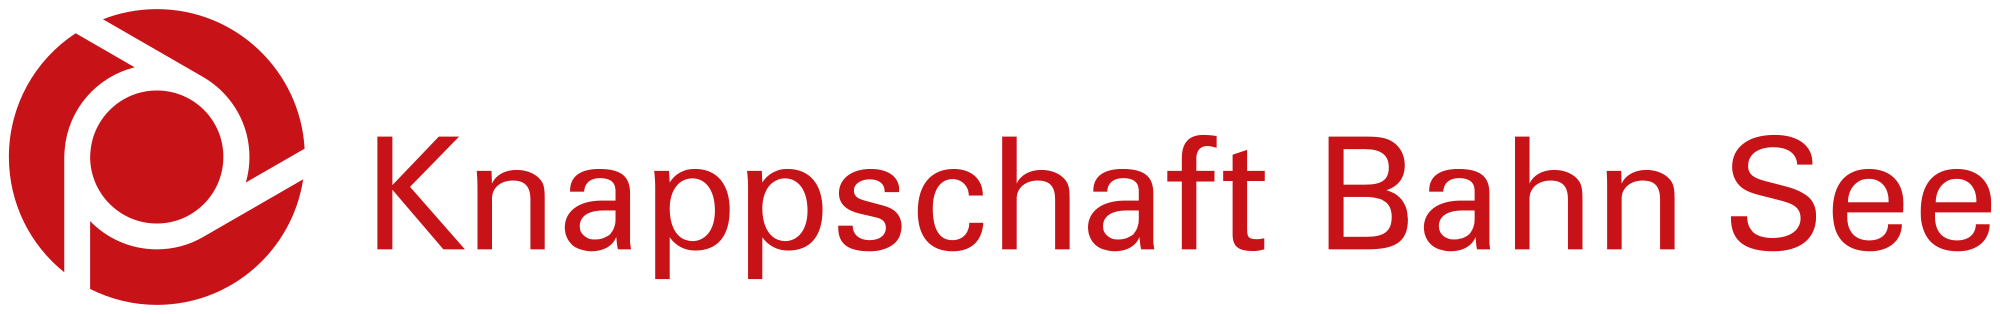 Logo Knappschaft Bahn See